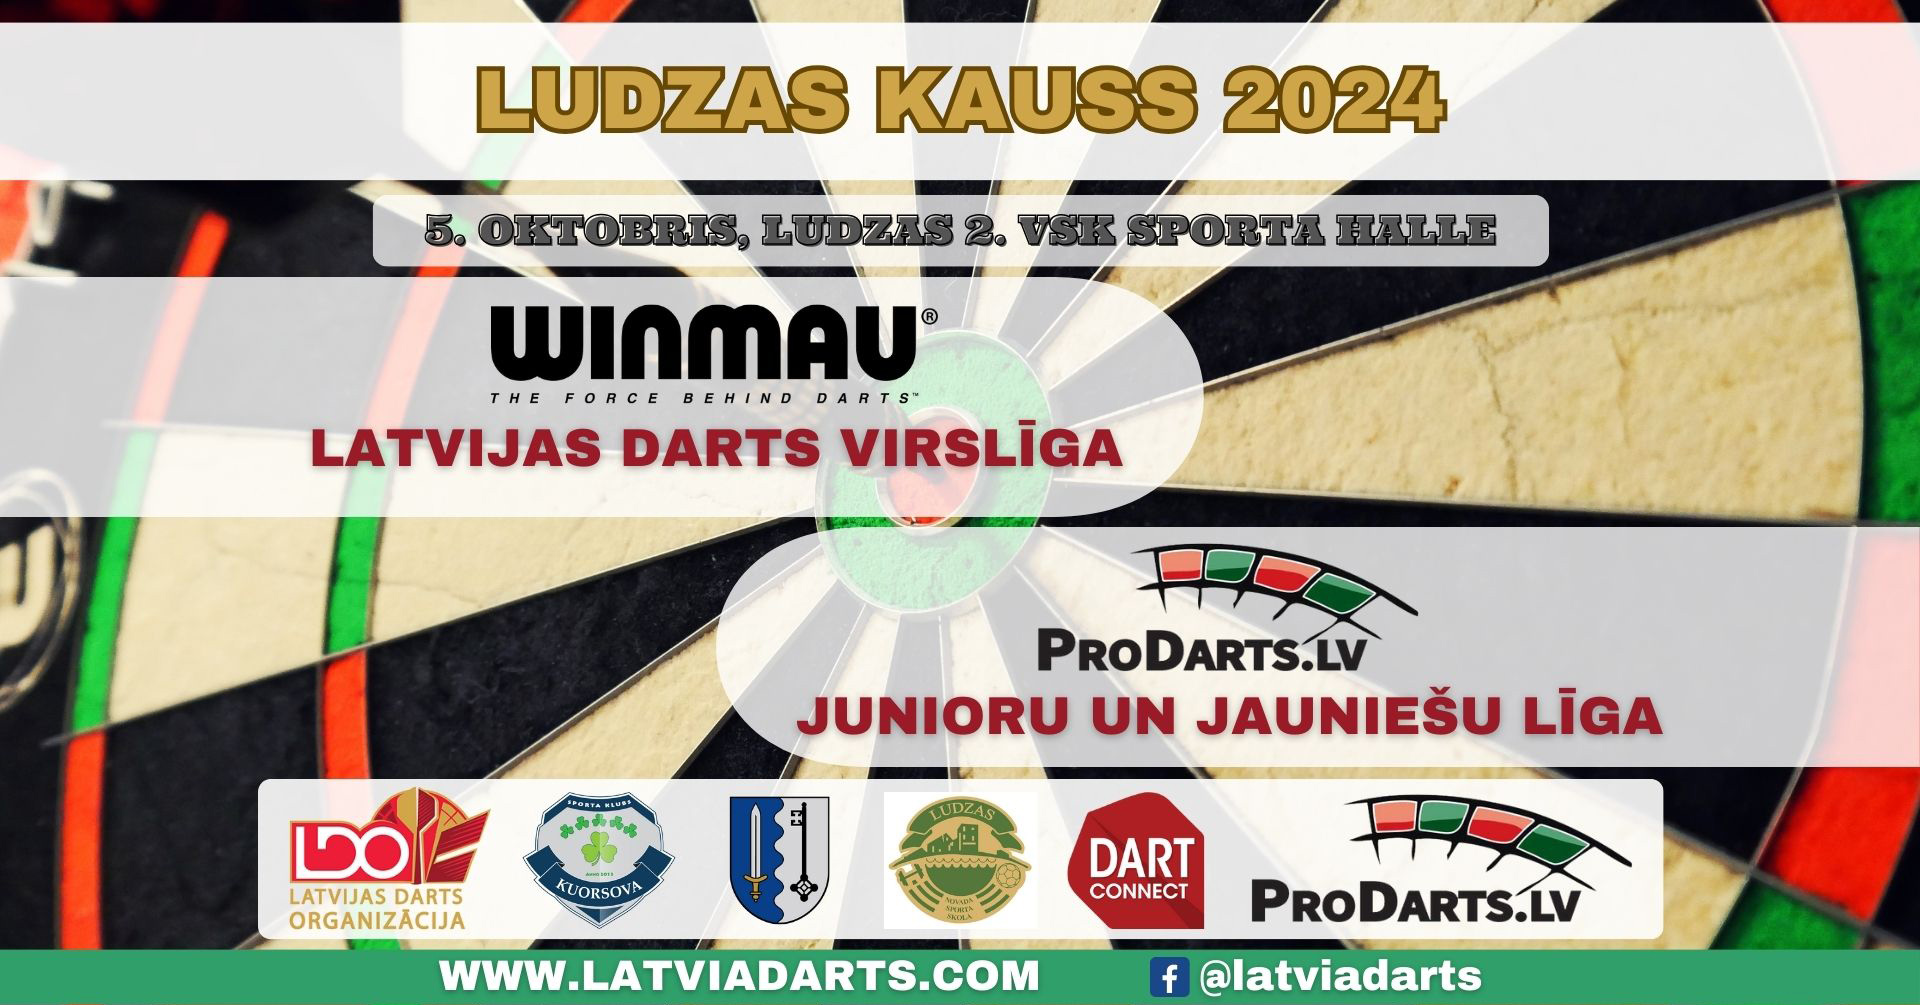 Ludzas-kauss-2024